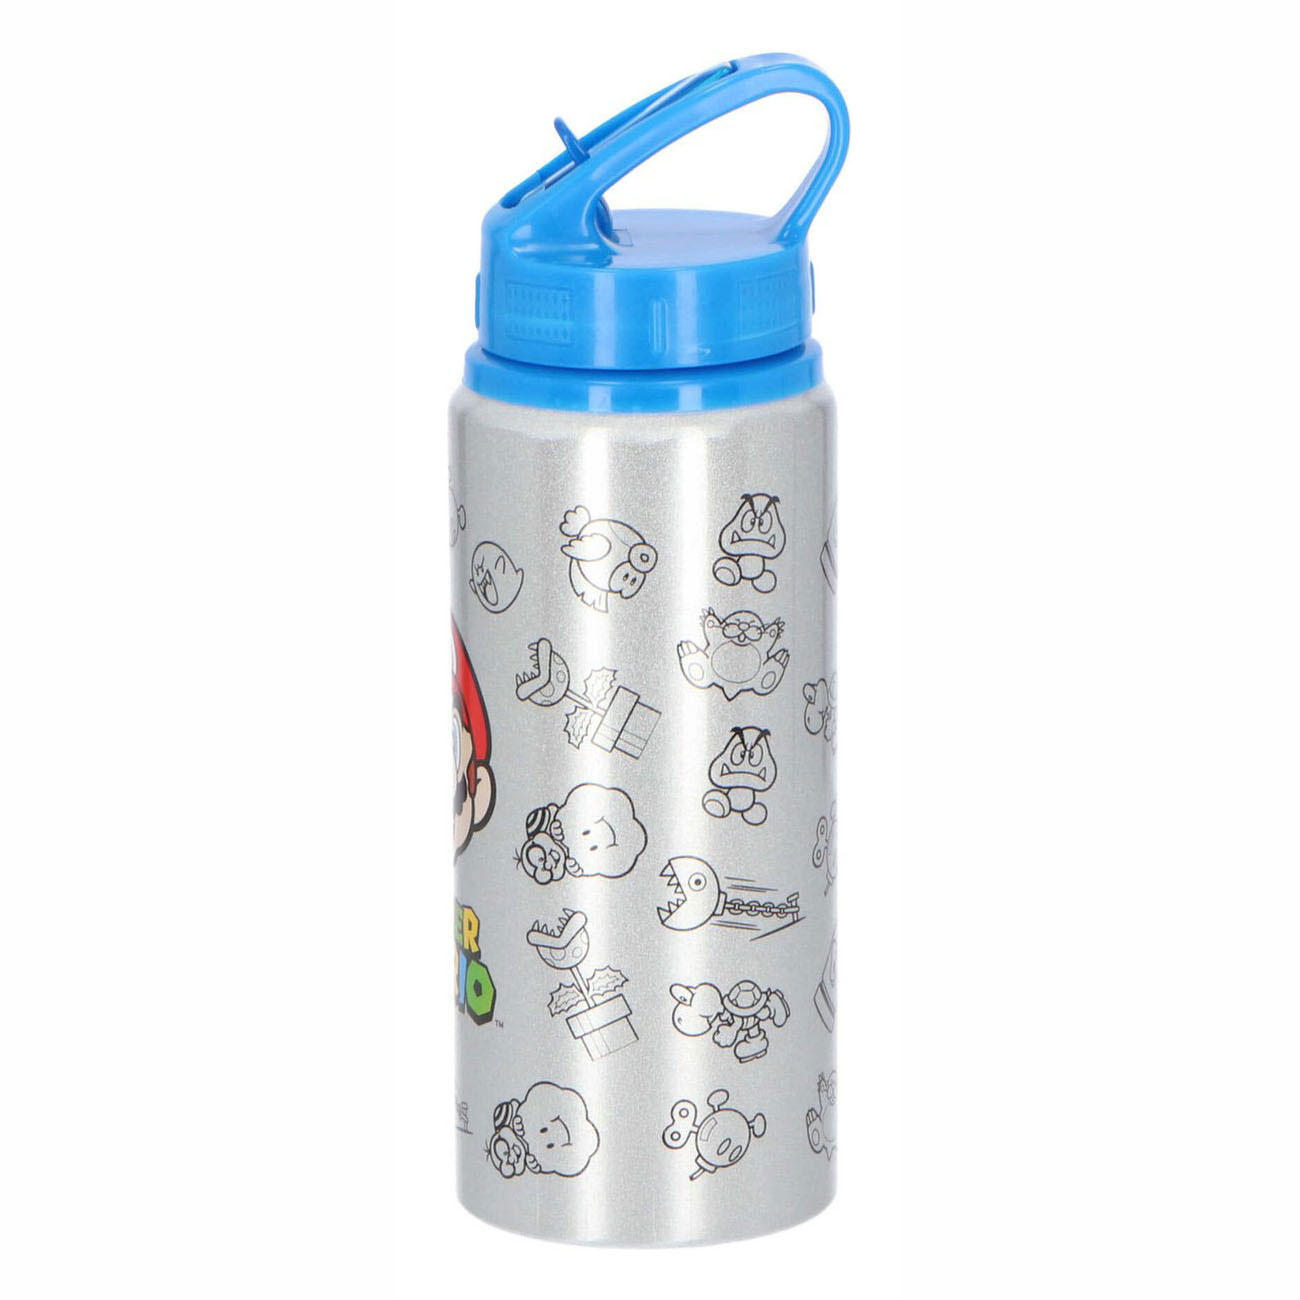 Super Mario Aluminium-Trinkflasche, 710 ml